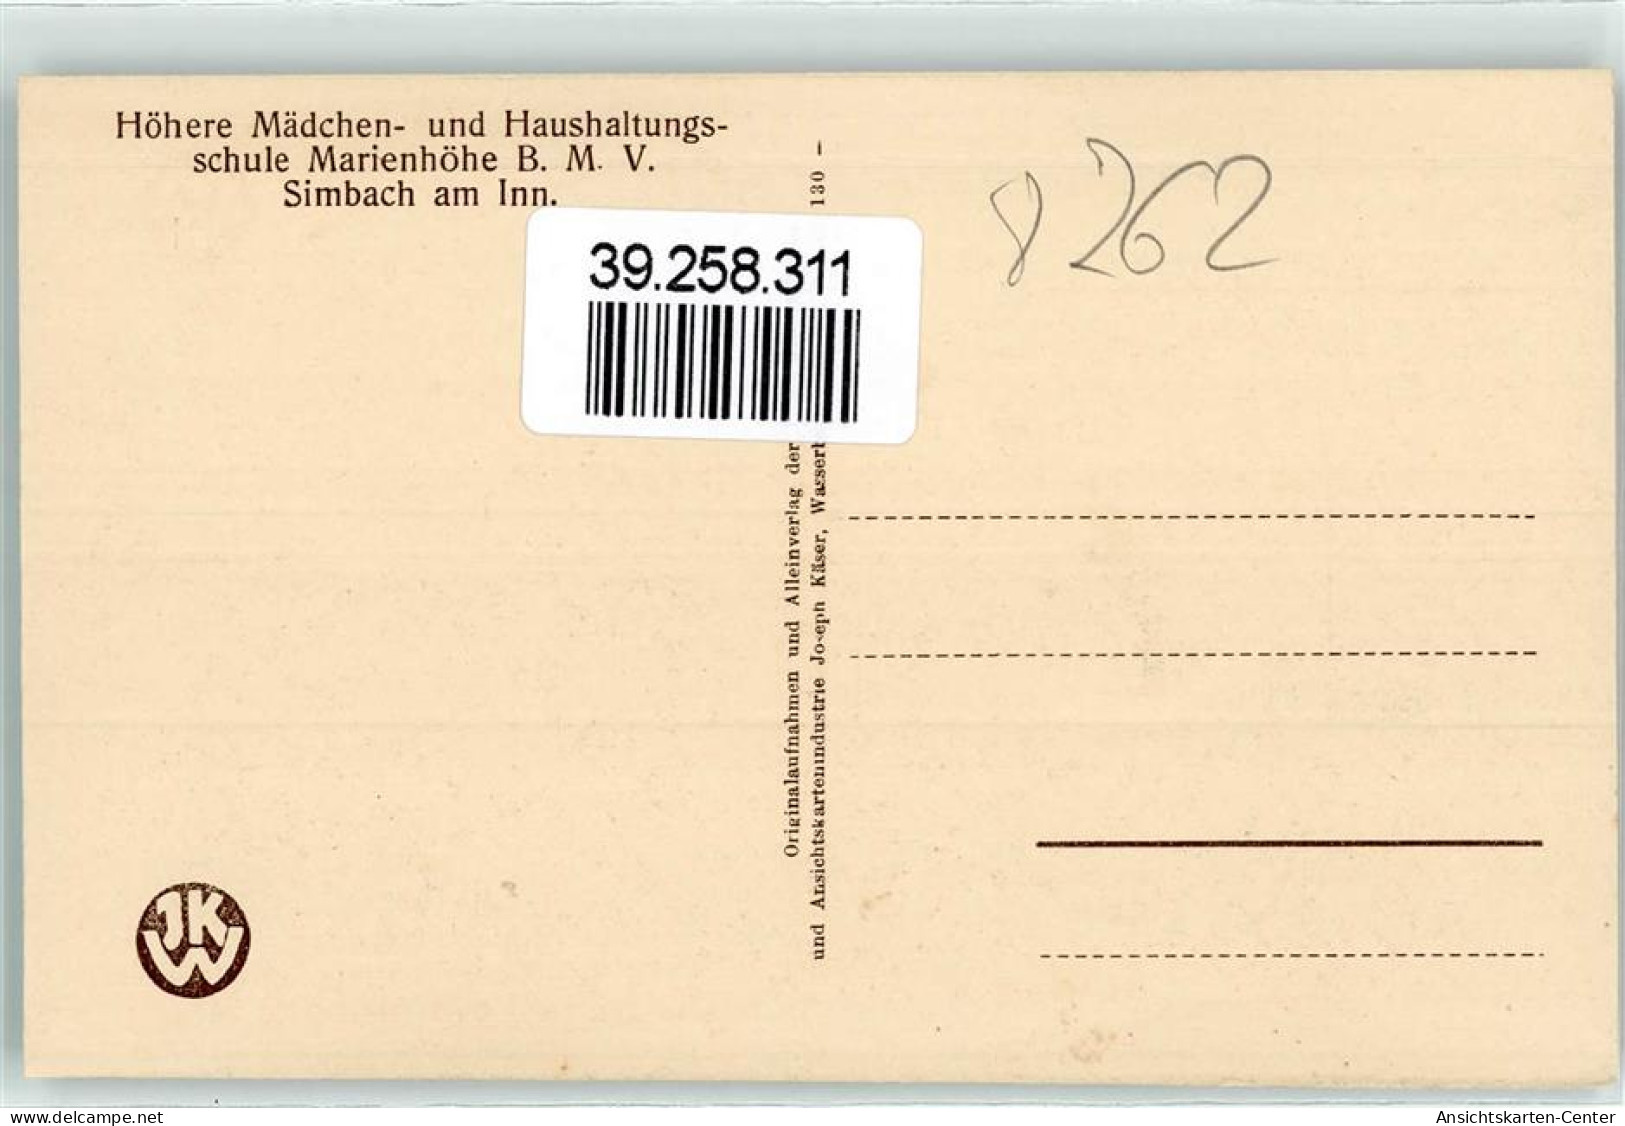 39258311 - Simbach A. Inn - Simbach